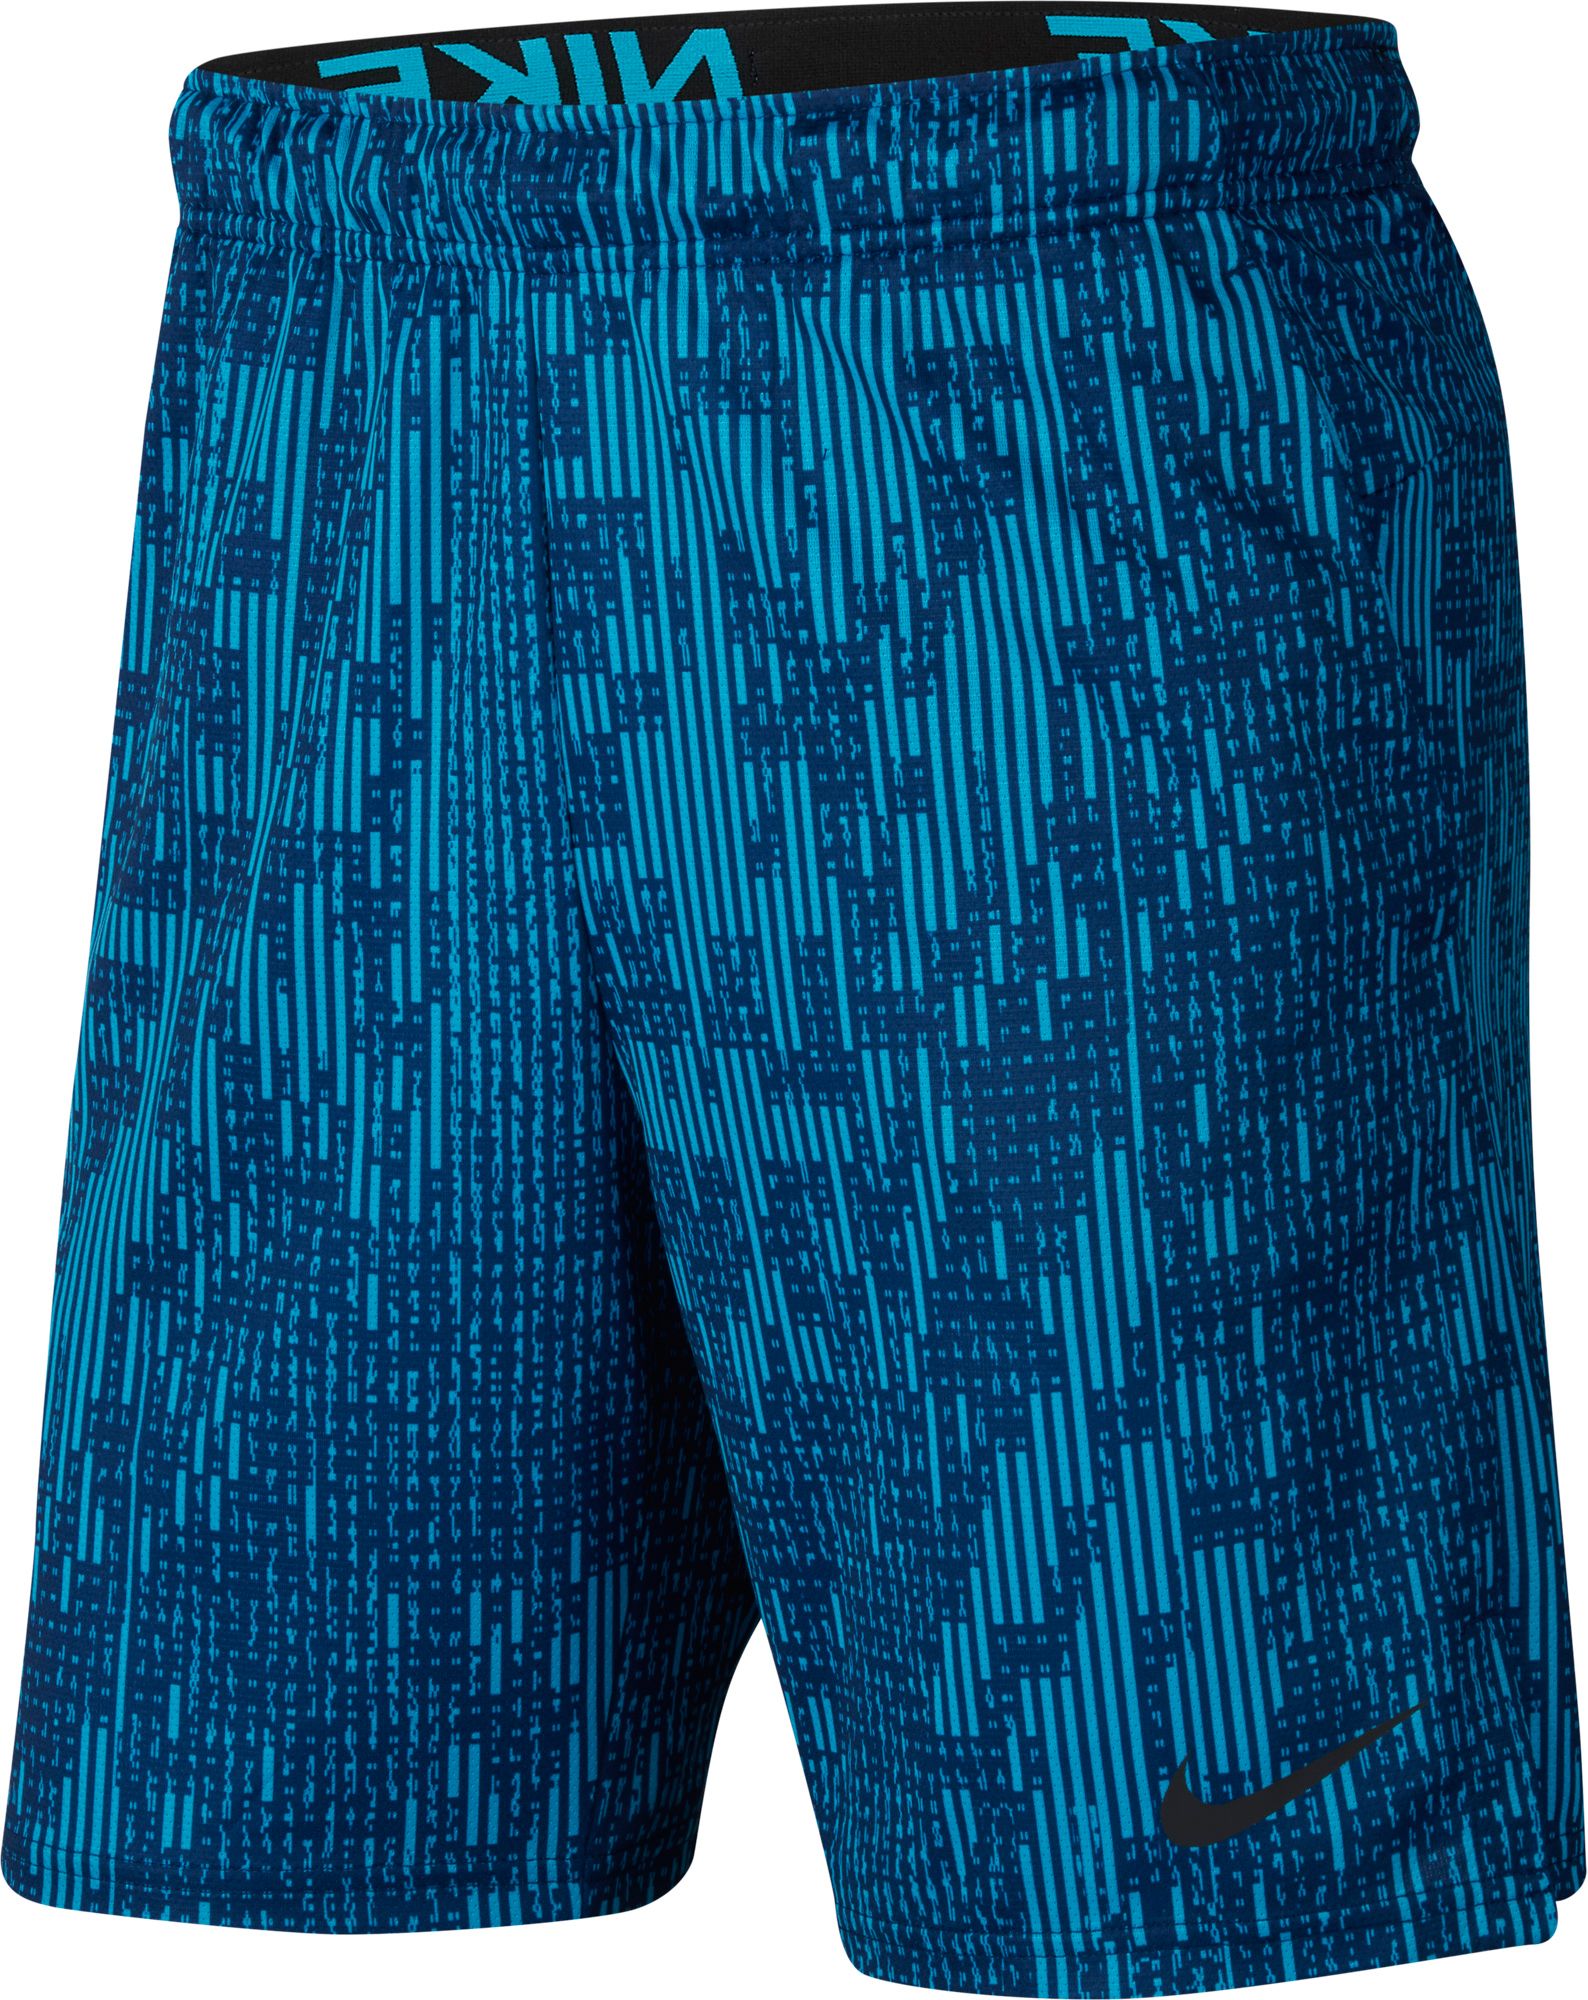 nike men's dry allover print 4.0 training shorts